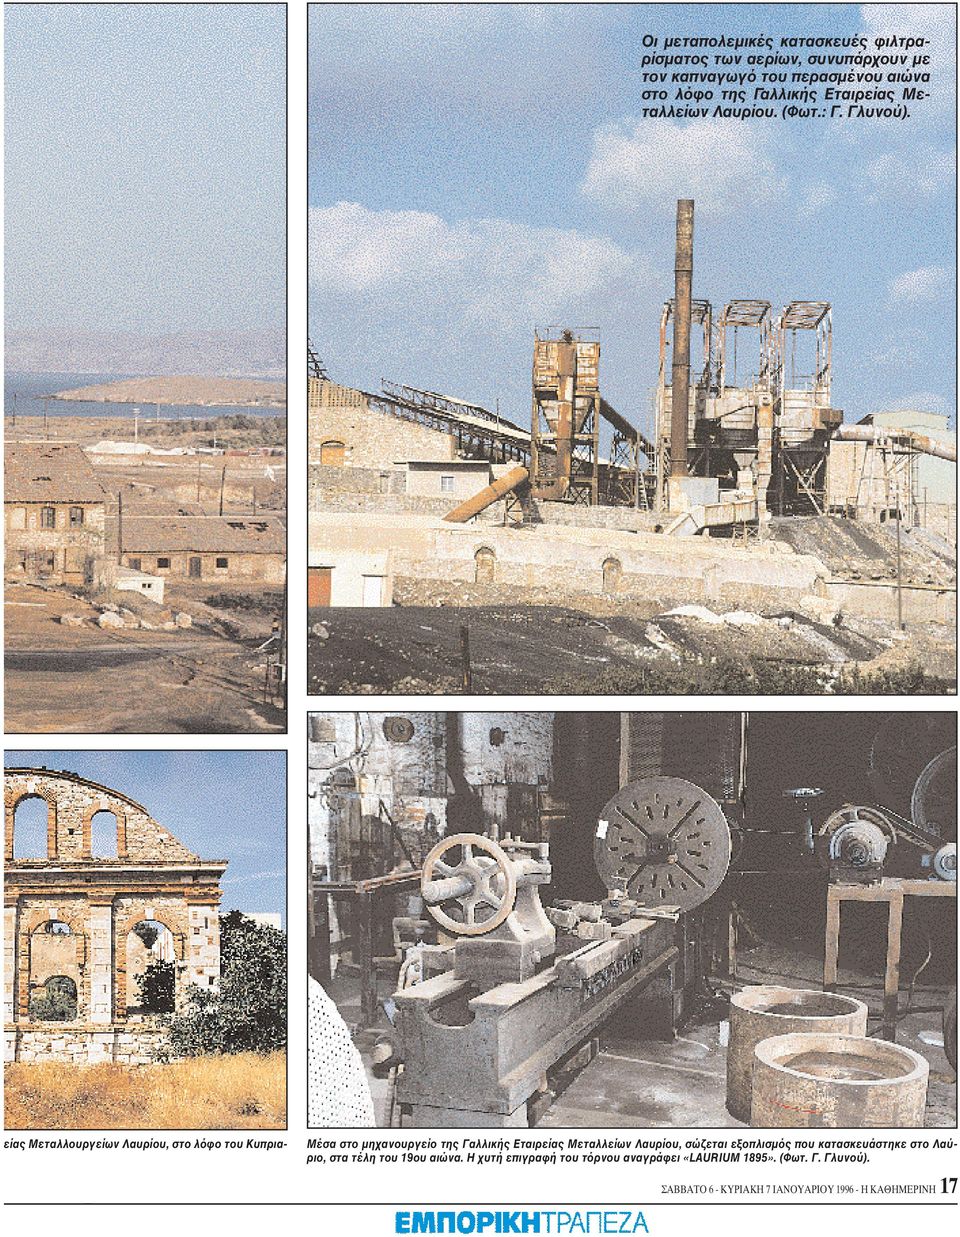 είας Mεταλλουργείων Λαυρίου, στο λόφο του Kυπρια- Mέσα στο μηχανουργείο της Γαλλικής Eταιρείας Mεταλλείων Λαυρίου, σώζεται